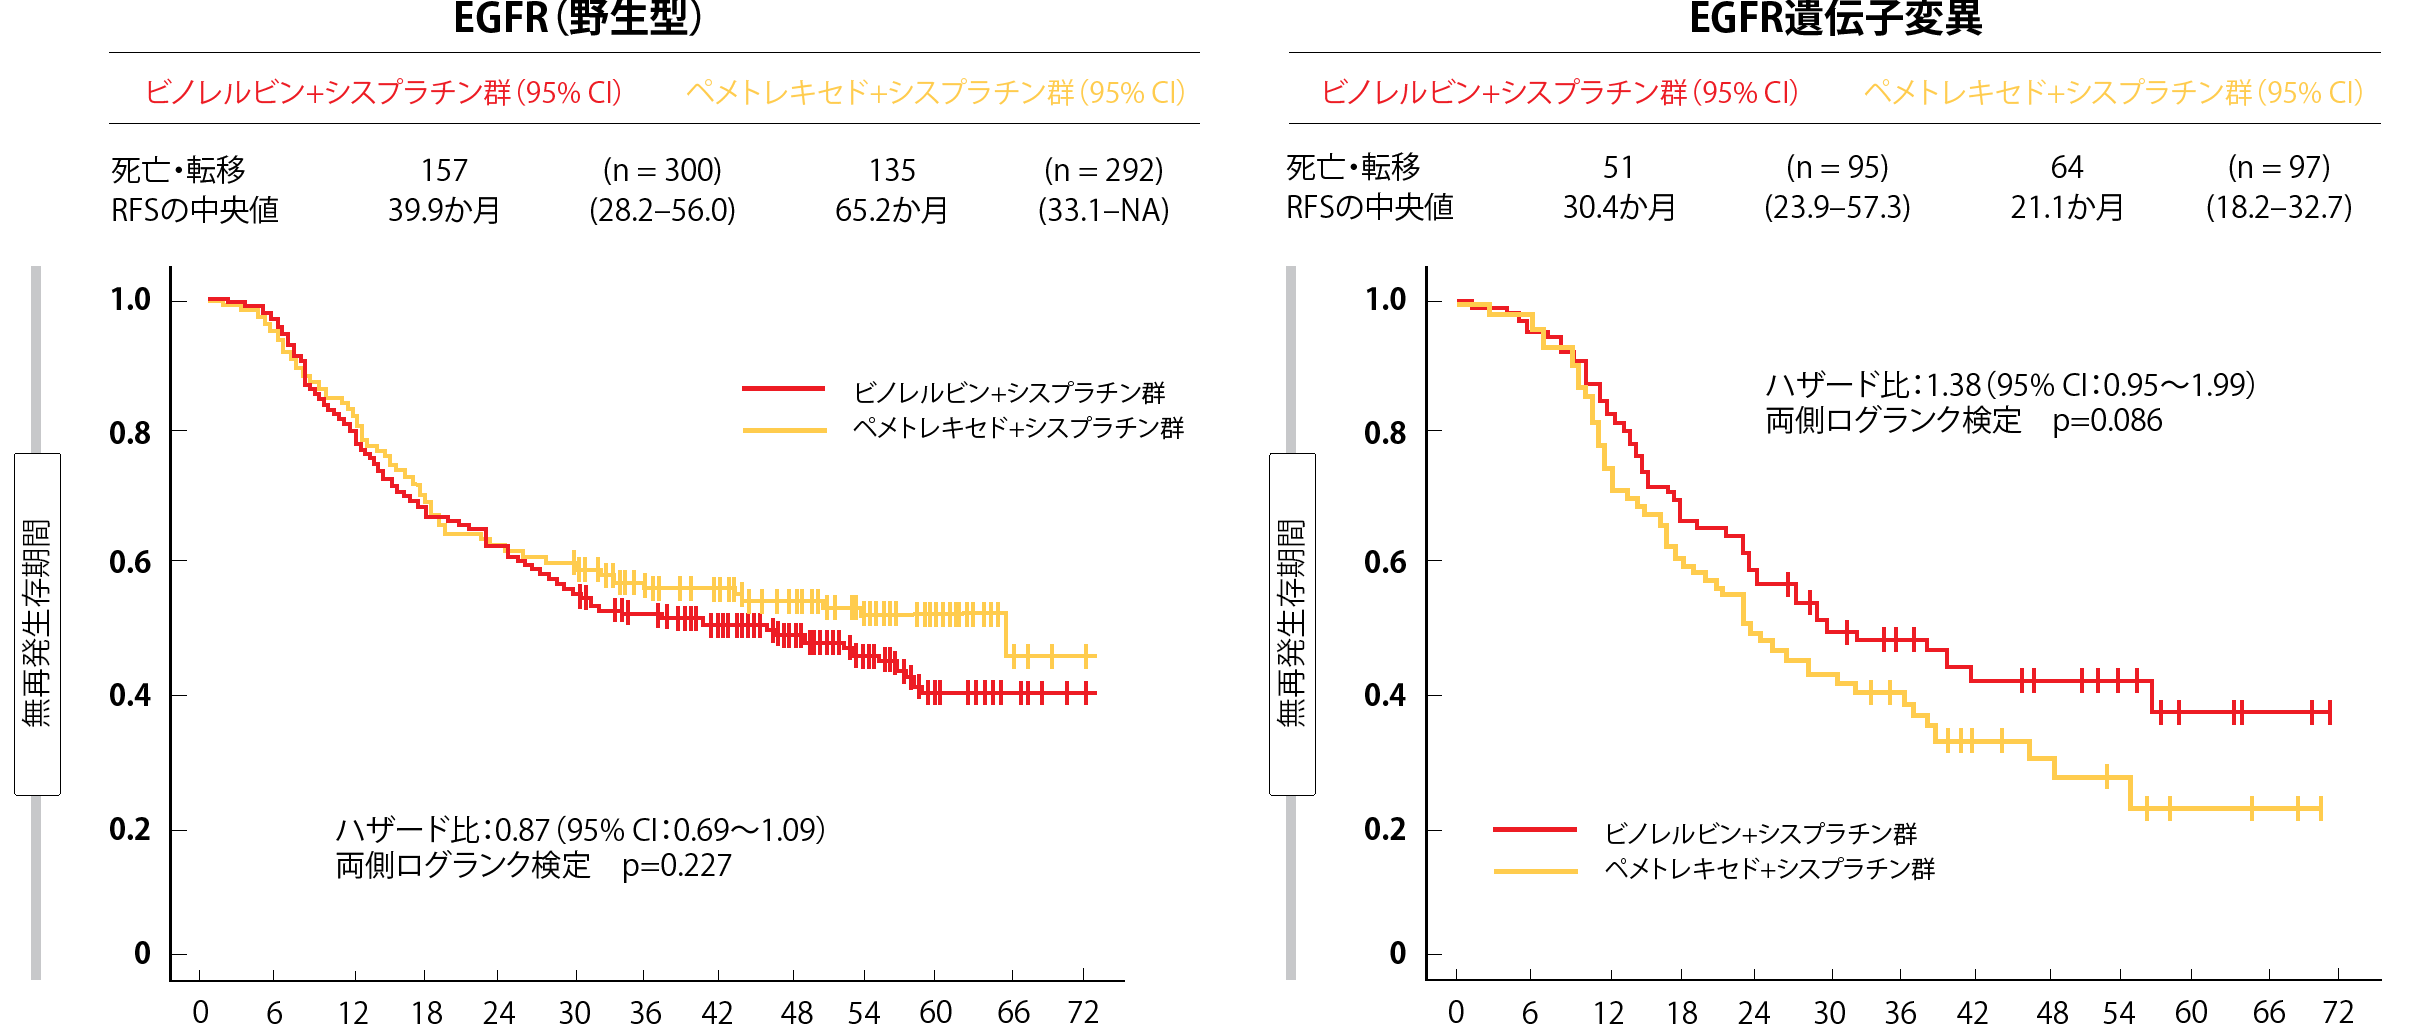 図2：野生型のEGFR遺伝子を検出した患者群ではペメトレキセド+シスプラチン併用療法に、EGFR遺伝子変異を検出した患者群ではビノレルビン+シスプラチン併用療法に無再発生存期間の延長がみられる。